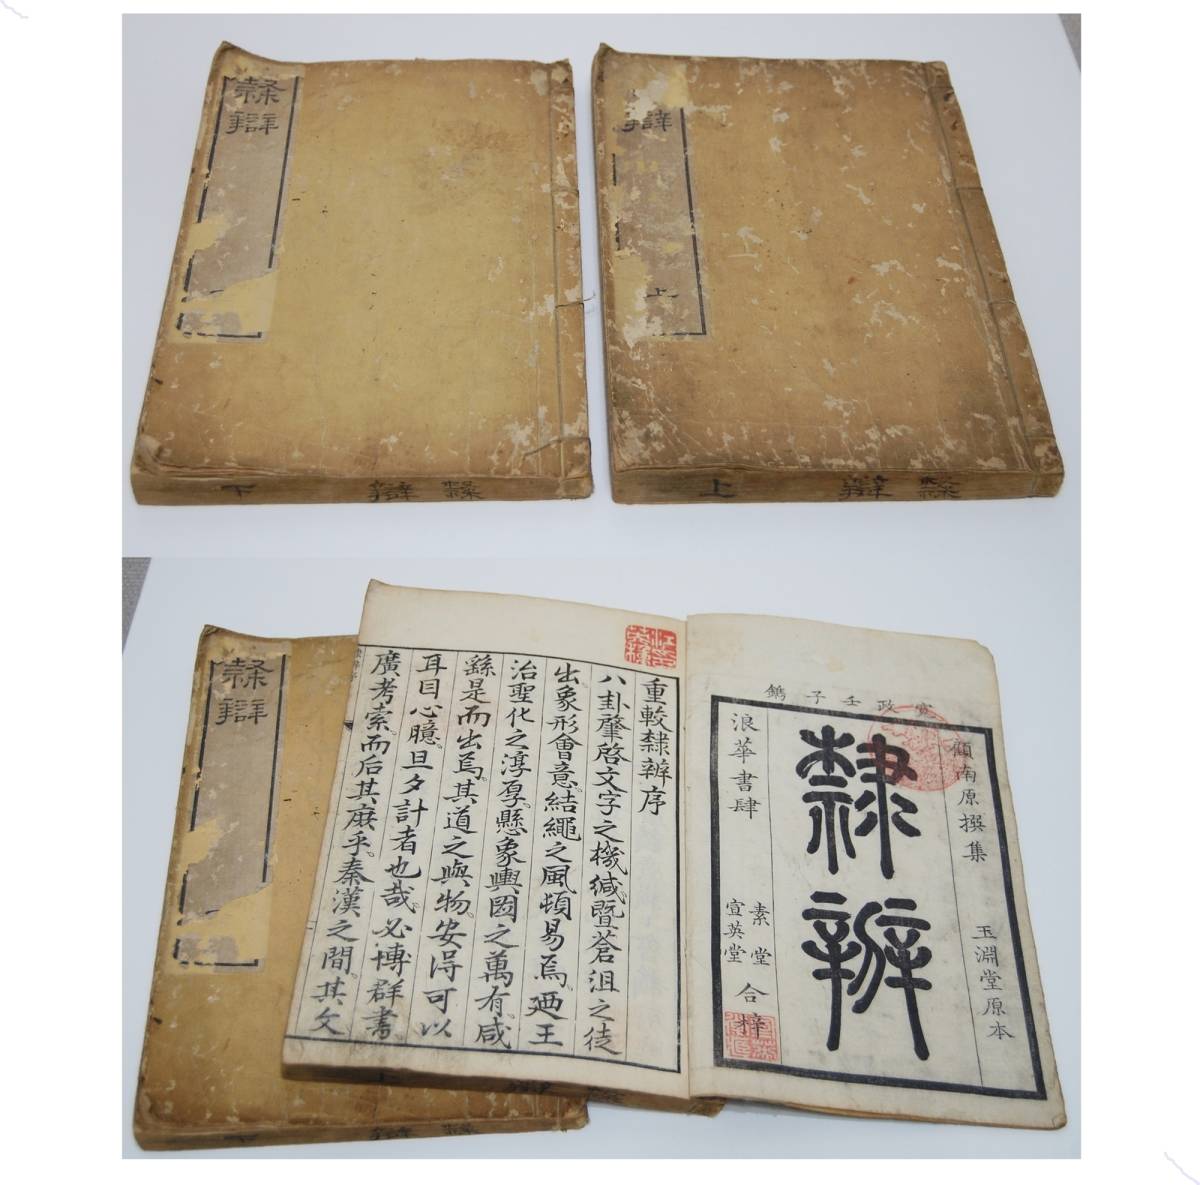 和本 江戸 寛政4年 （ 1792 ） 中国 書道 辞書「 隷辯 」上下 2冊 揃い 顧藹吉 古書 古文書 木版摺り 隷書　の出品です。